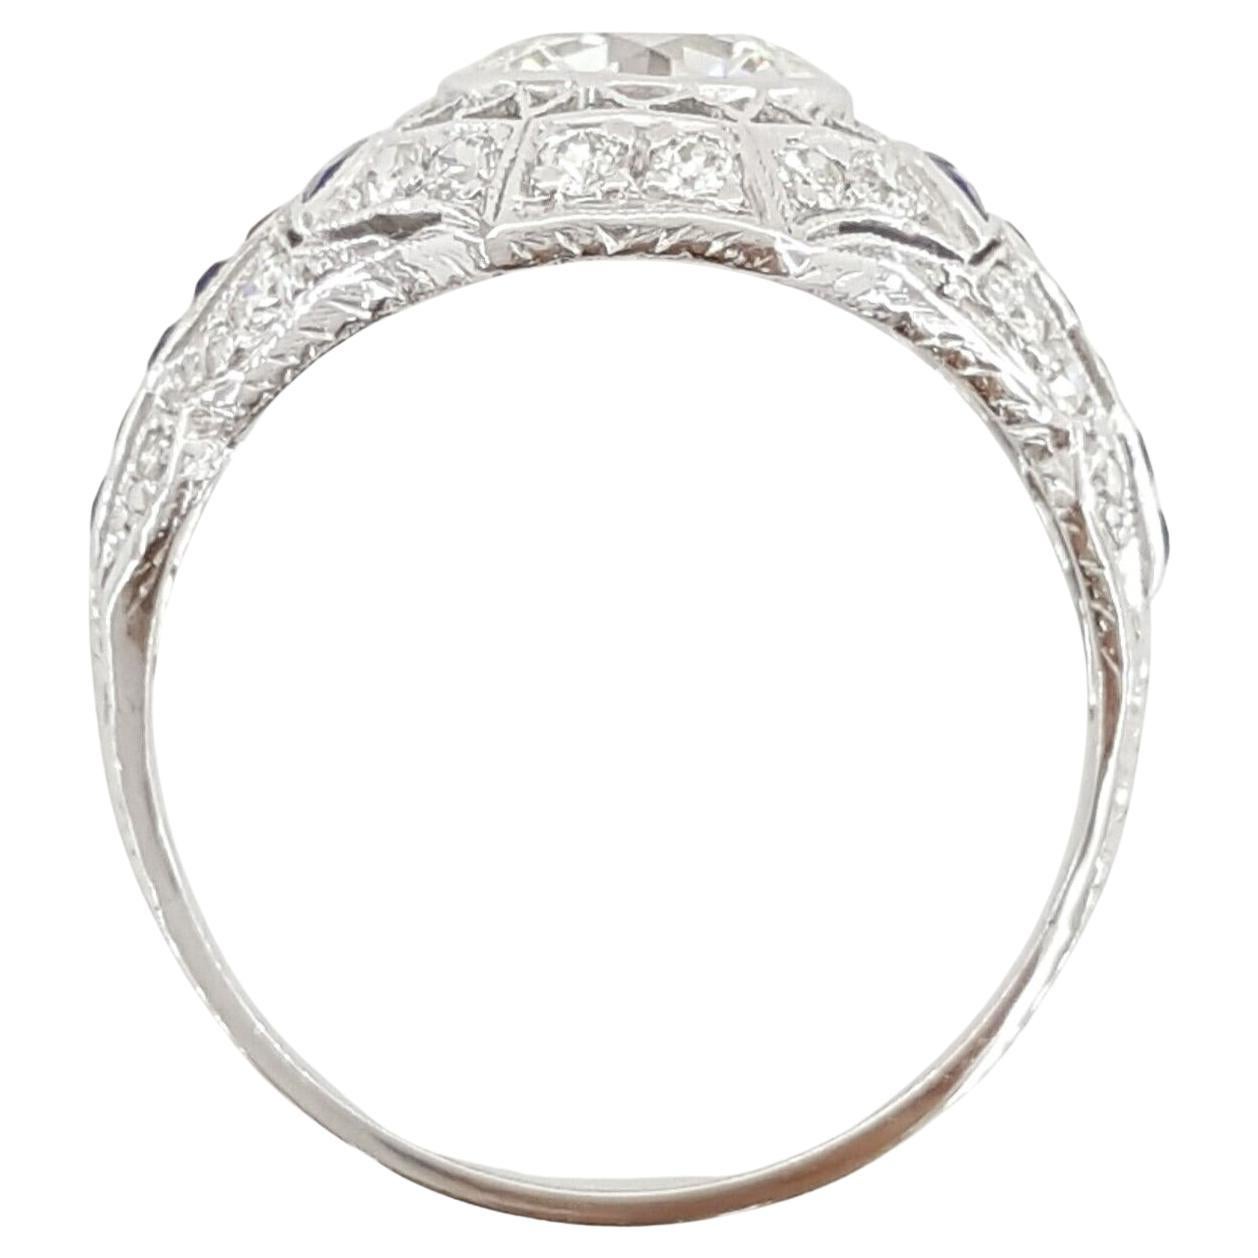 Une bague de fiançailles art déco authentique en platine, avec un diamant rond de taille brillant et un saphir.
